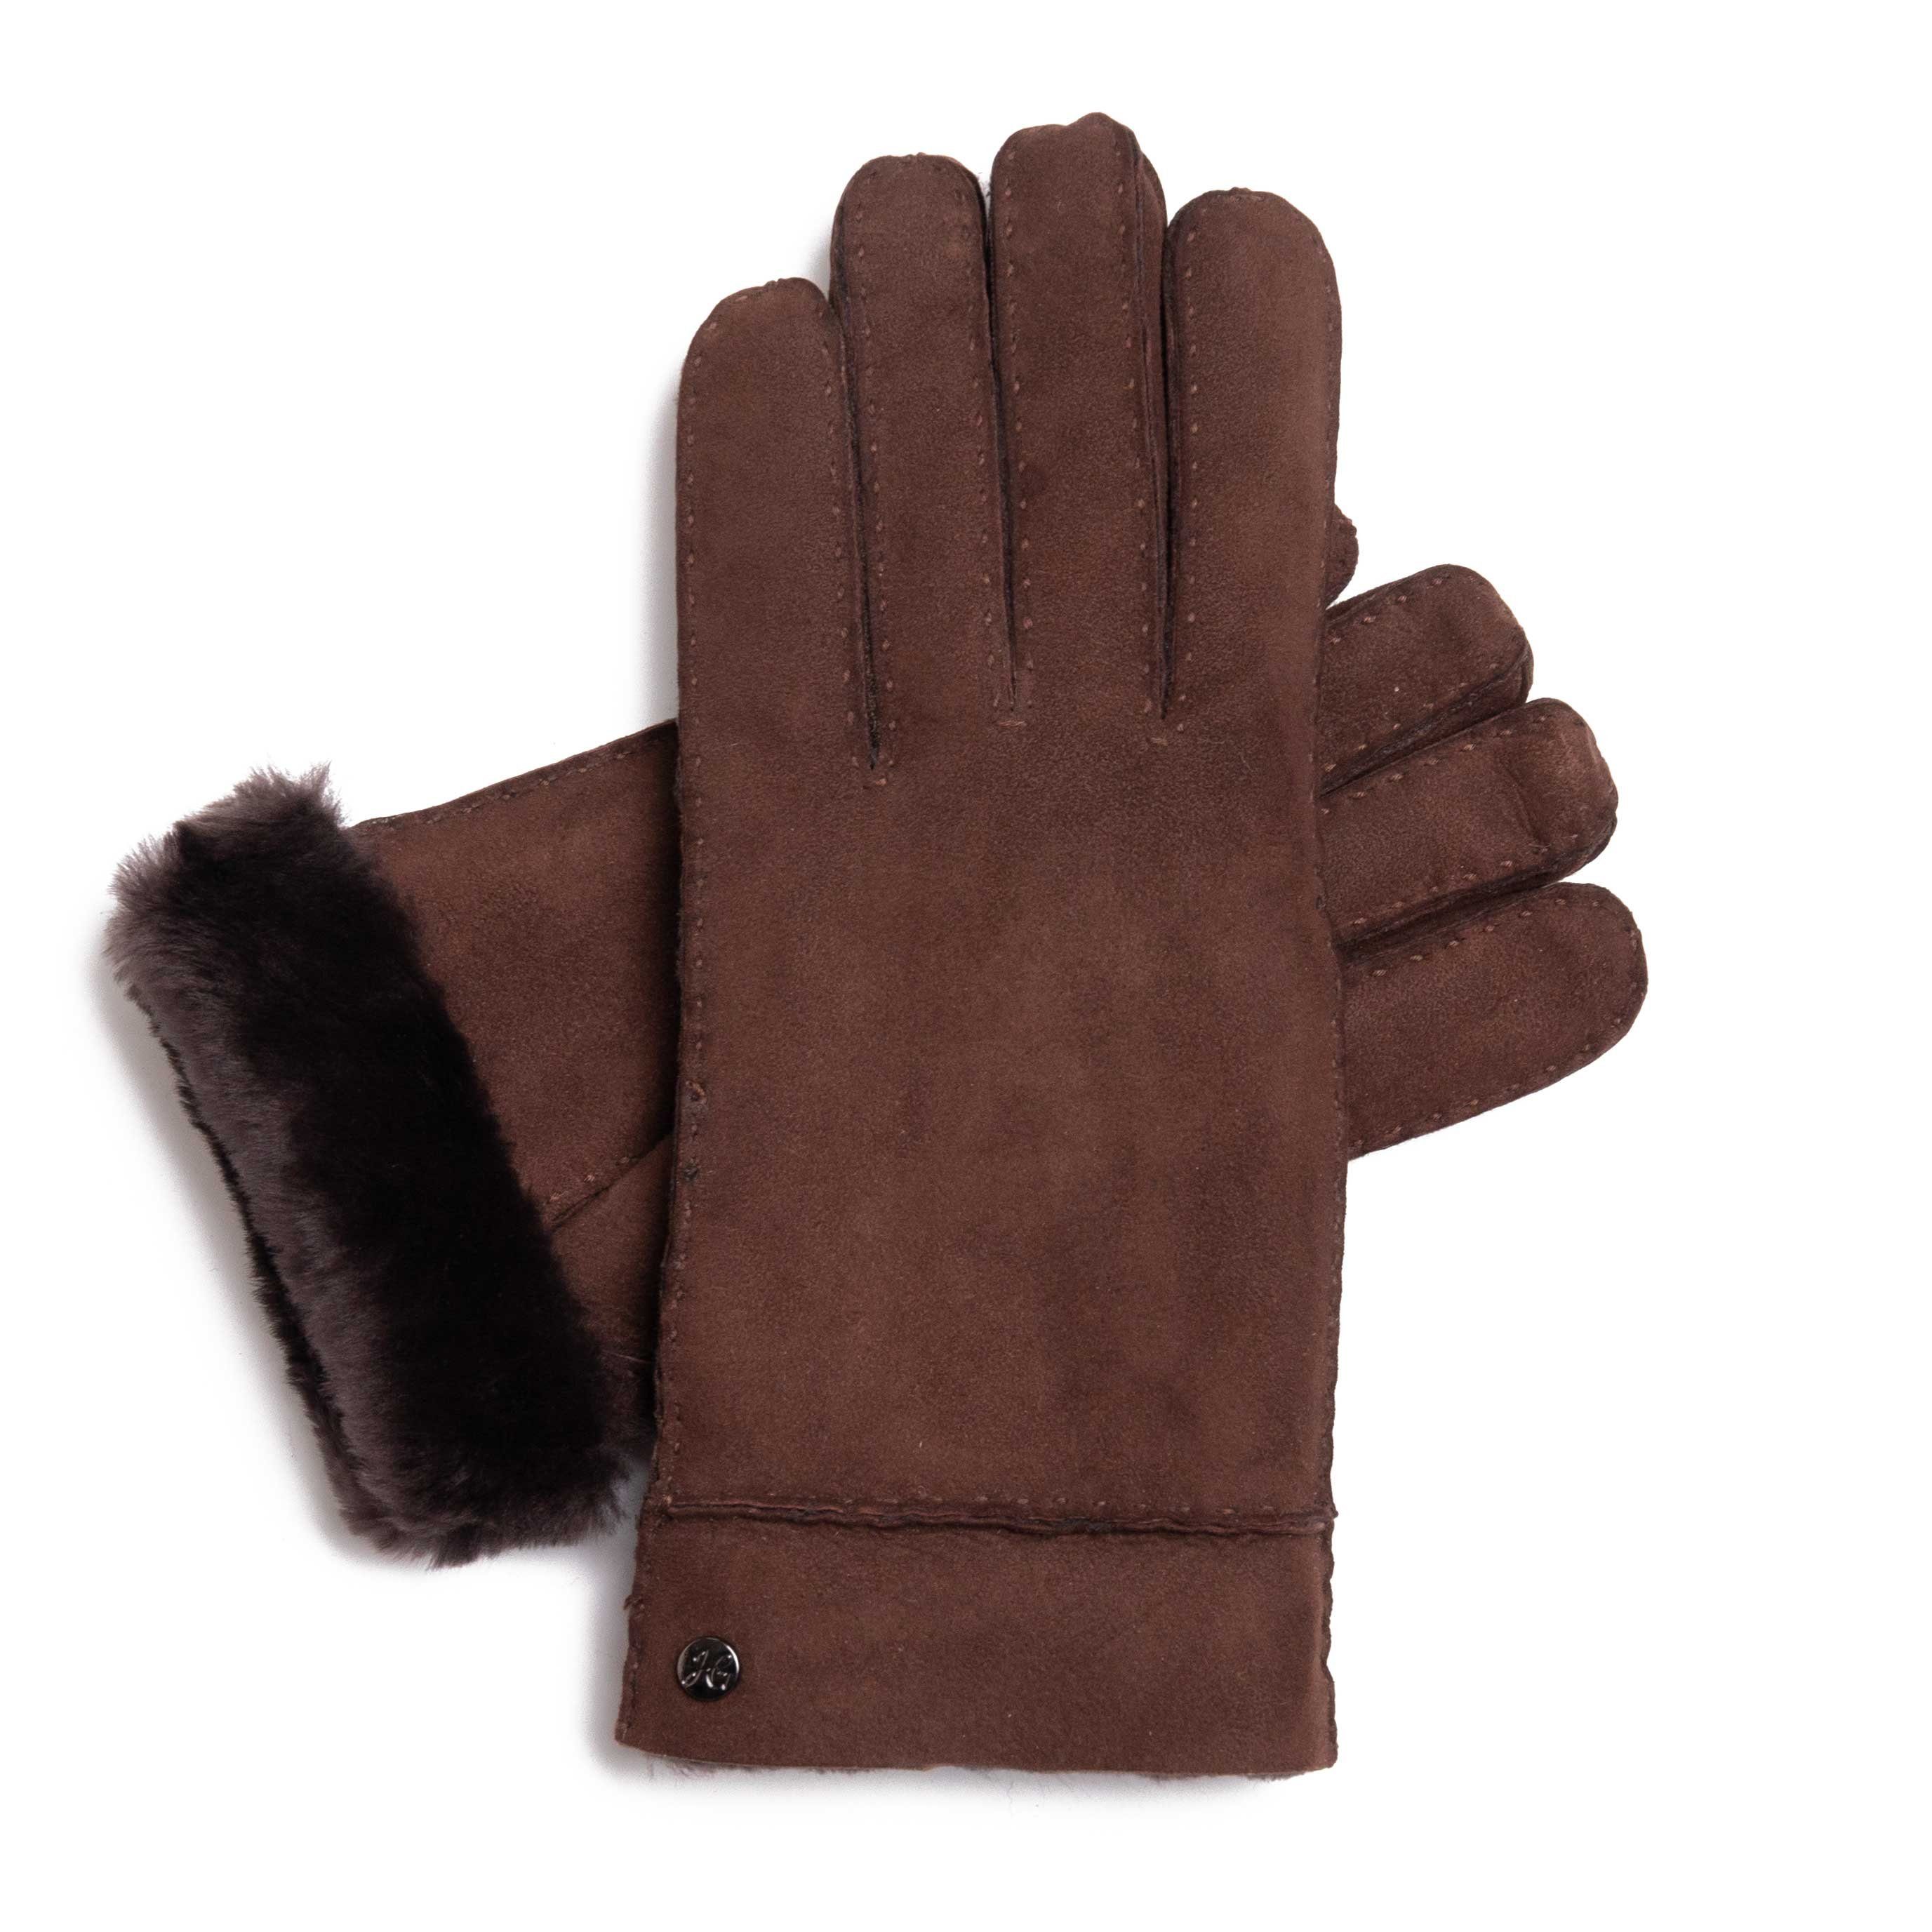 Hand Gewand by Weikert Lederhandschuhe ADAM - Lammfell-Handschuhe aus spanischem Merino-Lammfell Dunkelbraun